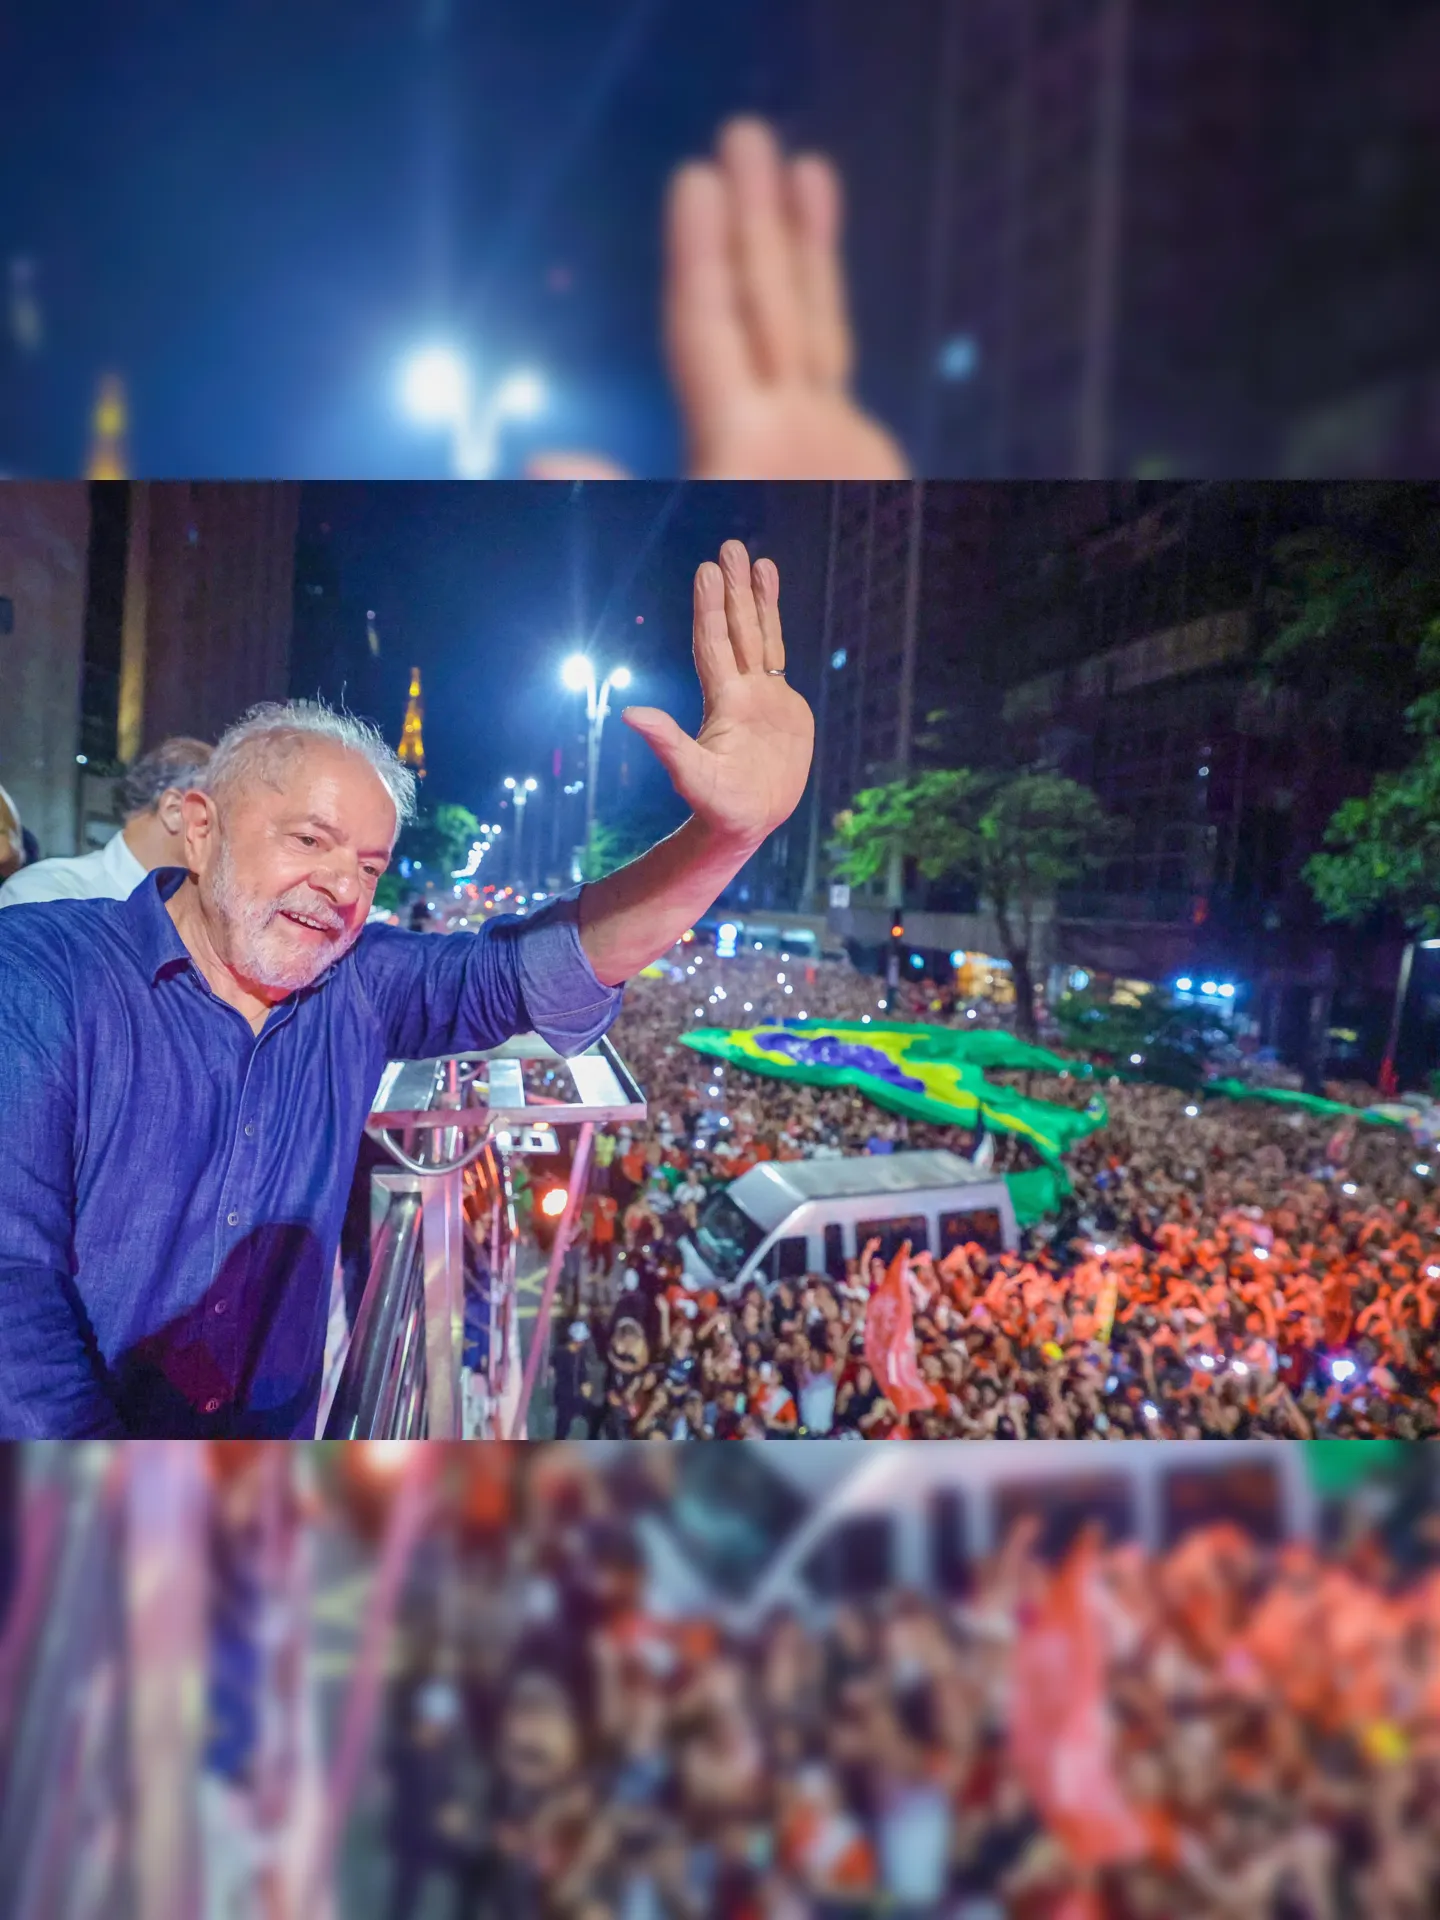 "Daqui para frente, tudo que a gente sonhar vai brotar", escreveu Lula